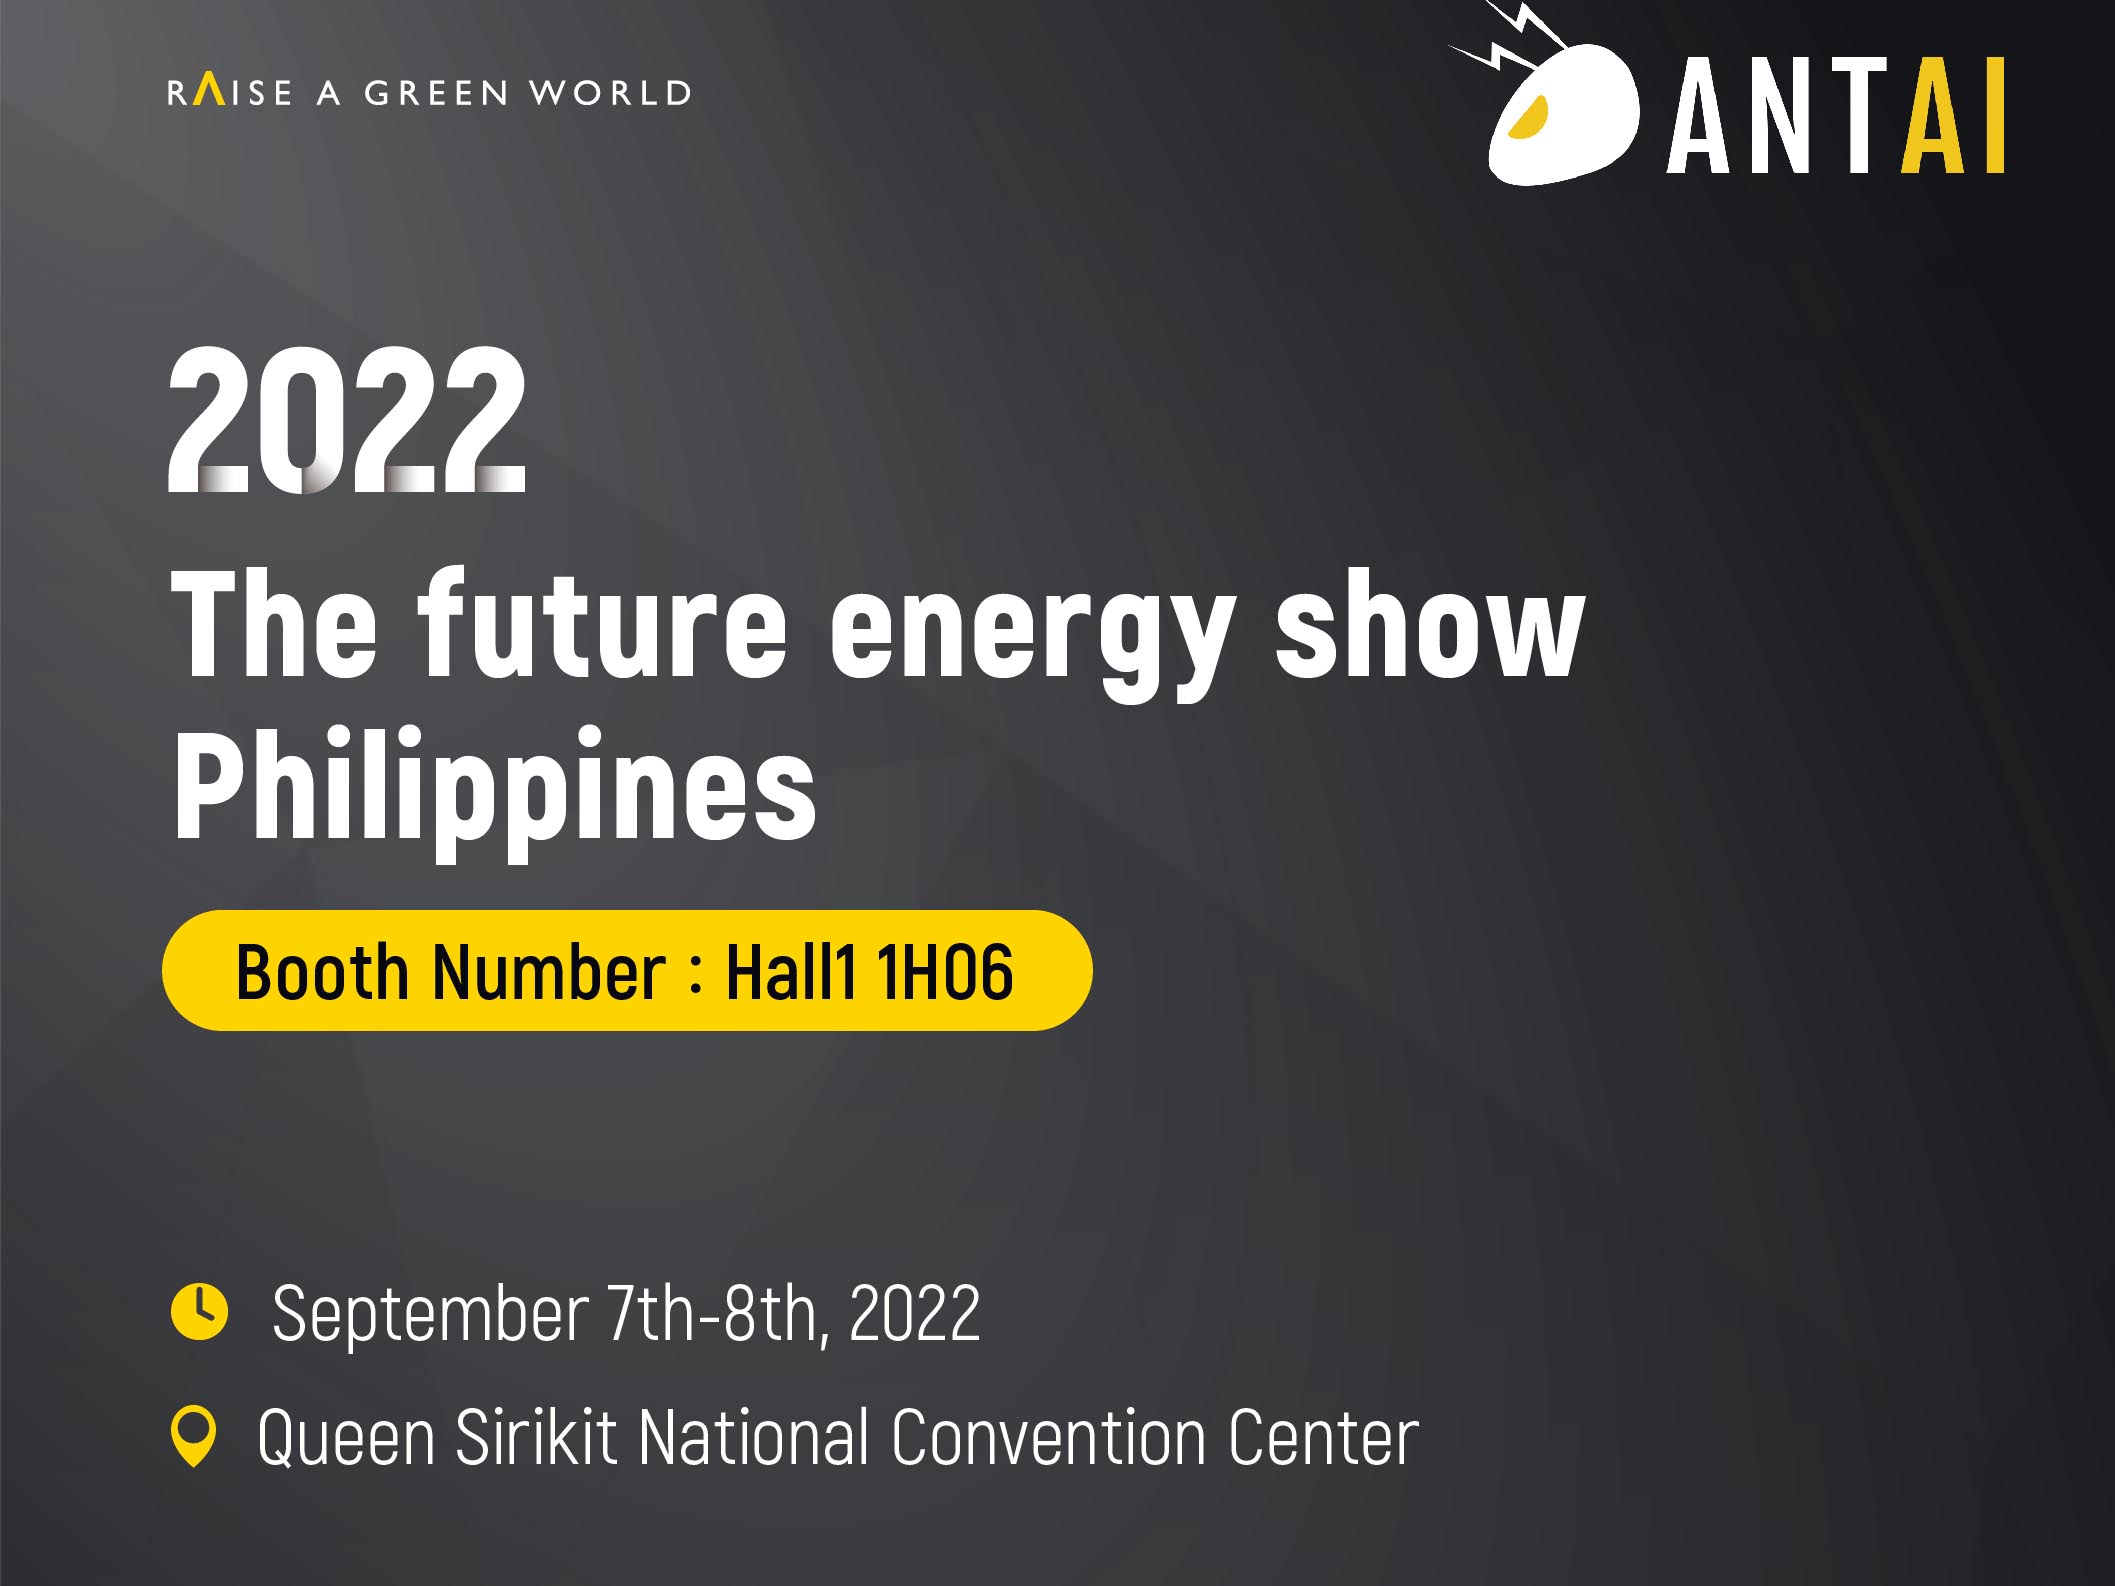 Antaisolar รอคอยการปรากฏตัวของคุณอย่างจริงใจที่งาน The Future Energy Show Philippines 2022
